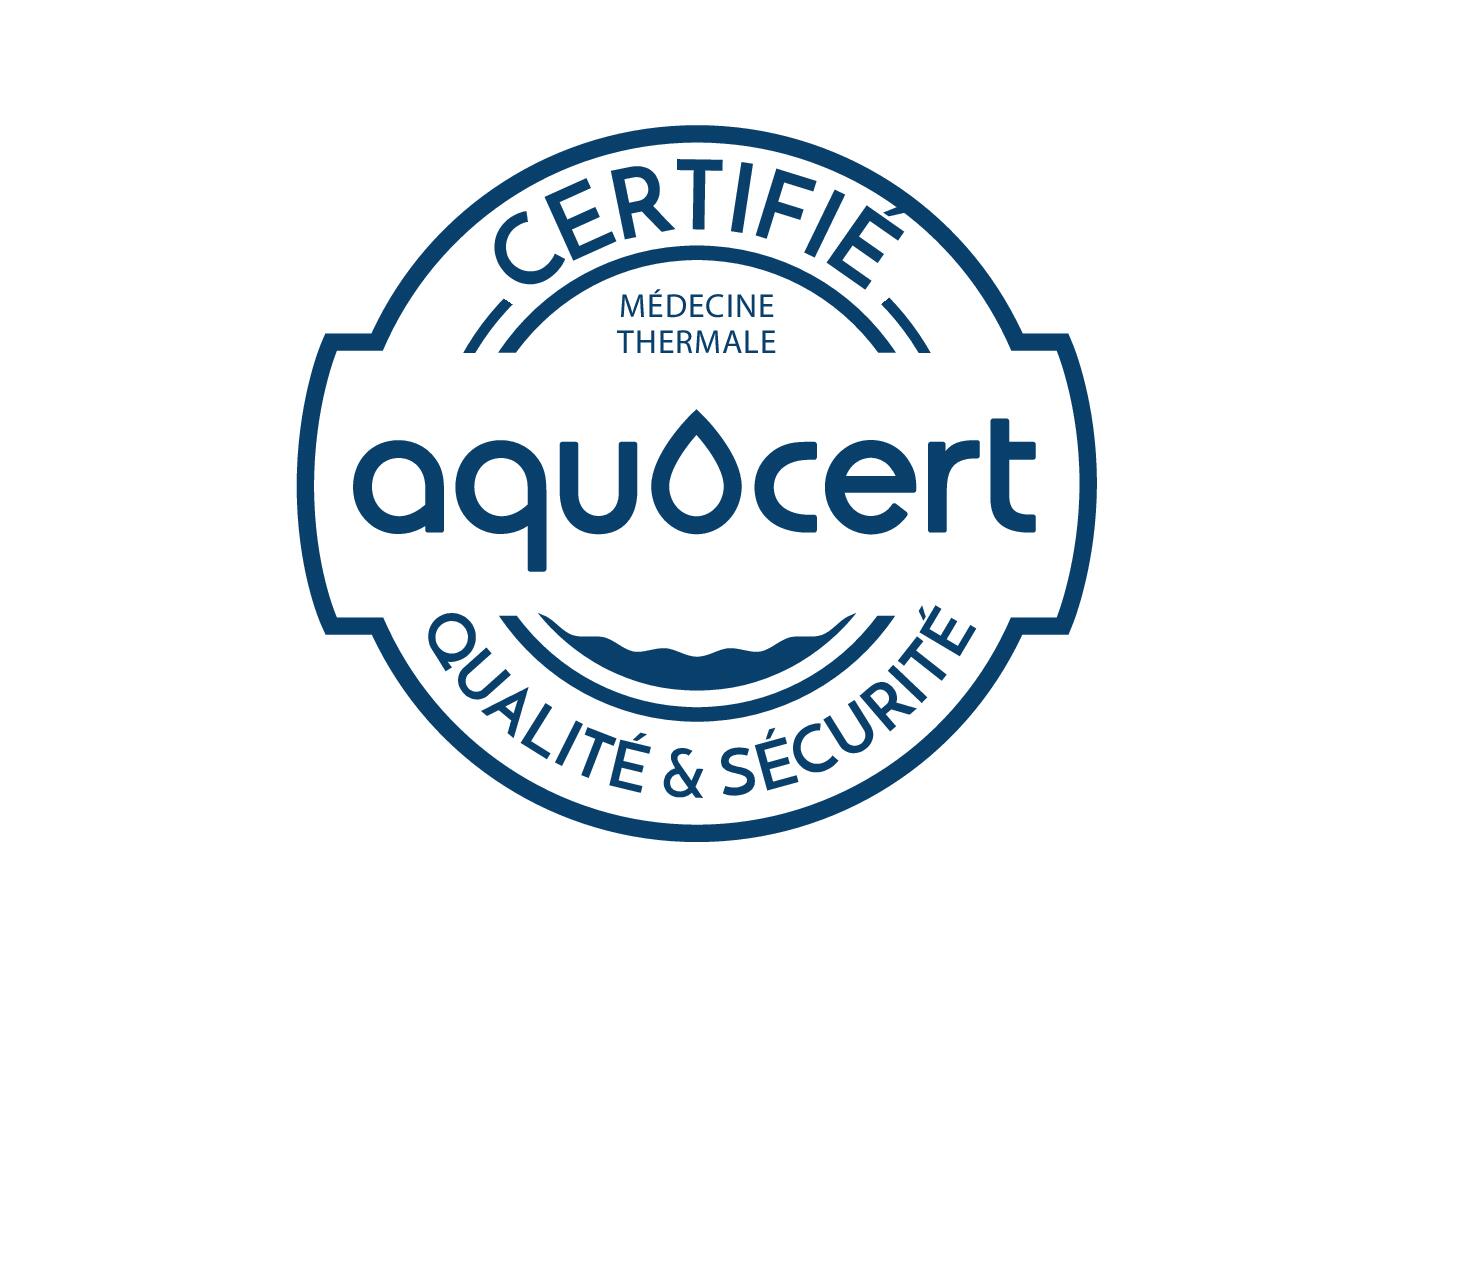 av_certification-aquacert-avene-center